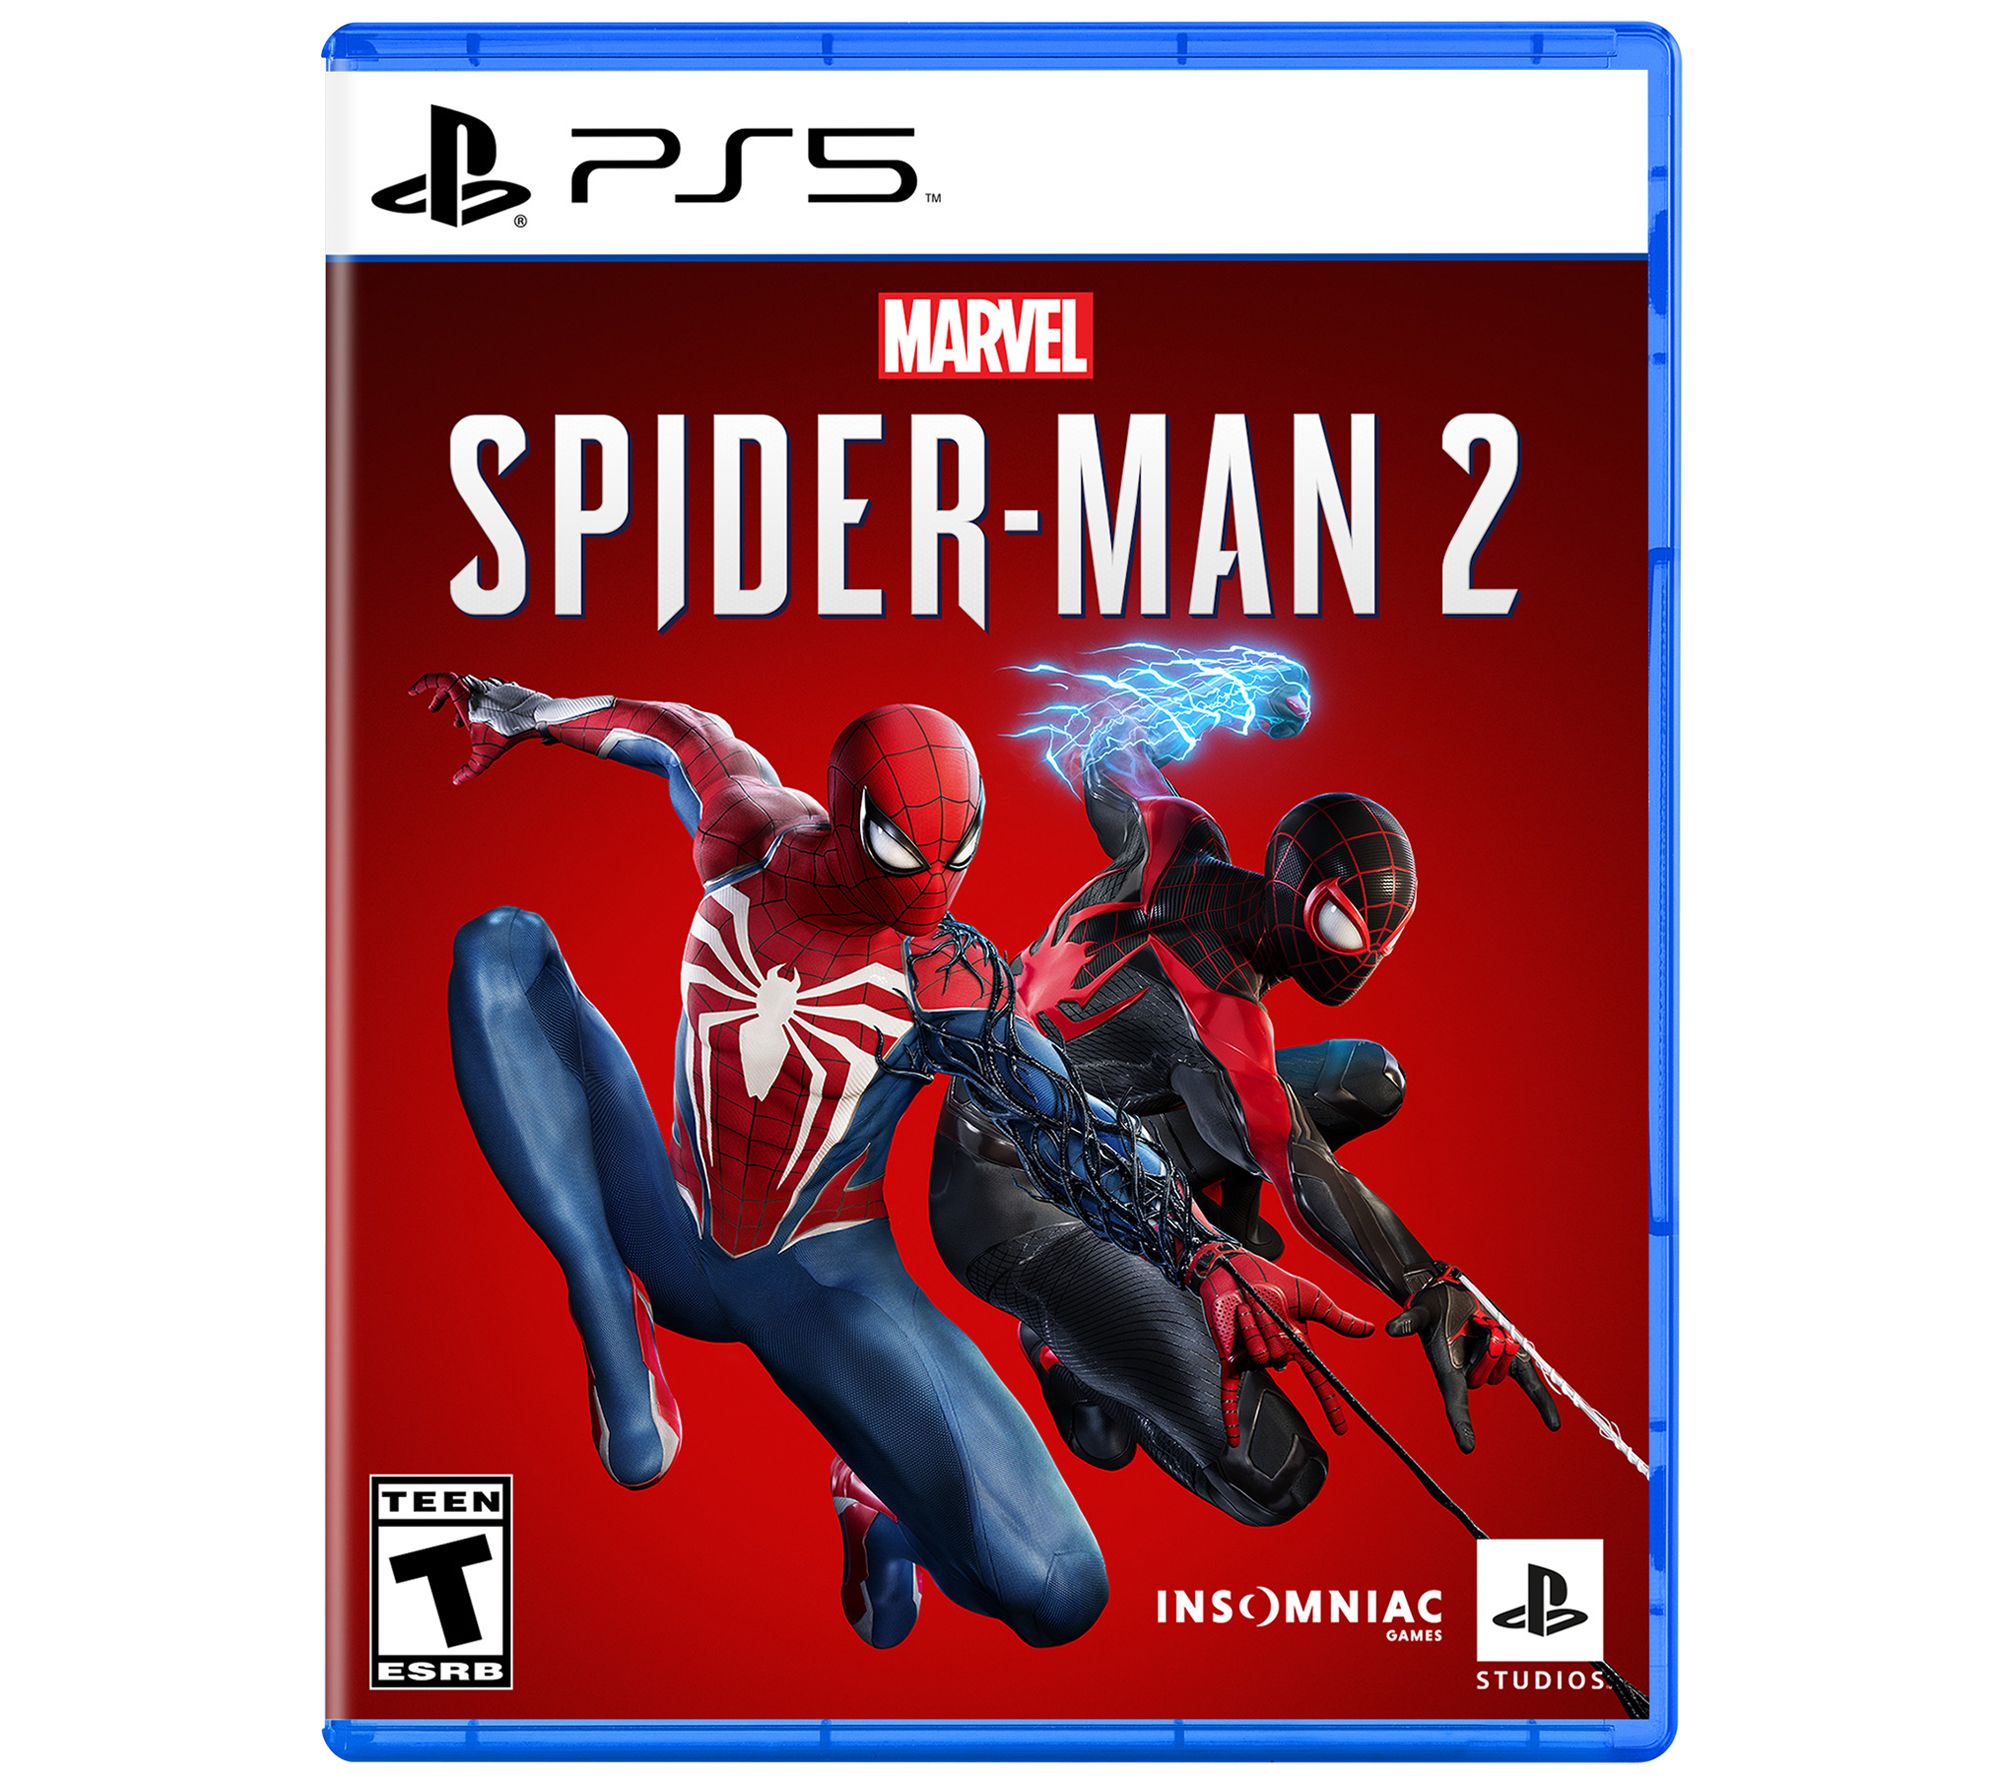 Marvels Spider Man 2 PS5, spider-man 2 game ps5 trailer, spider man 2 ps5  gameplay trailer, spider man 2 game ps5 release date, spider man game ps5  release date, Marvels Spider-Man 2